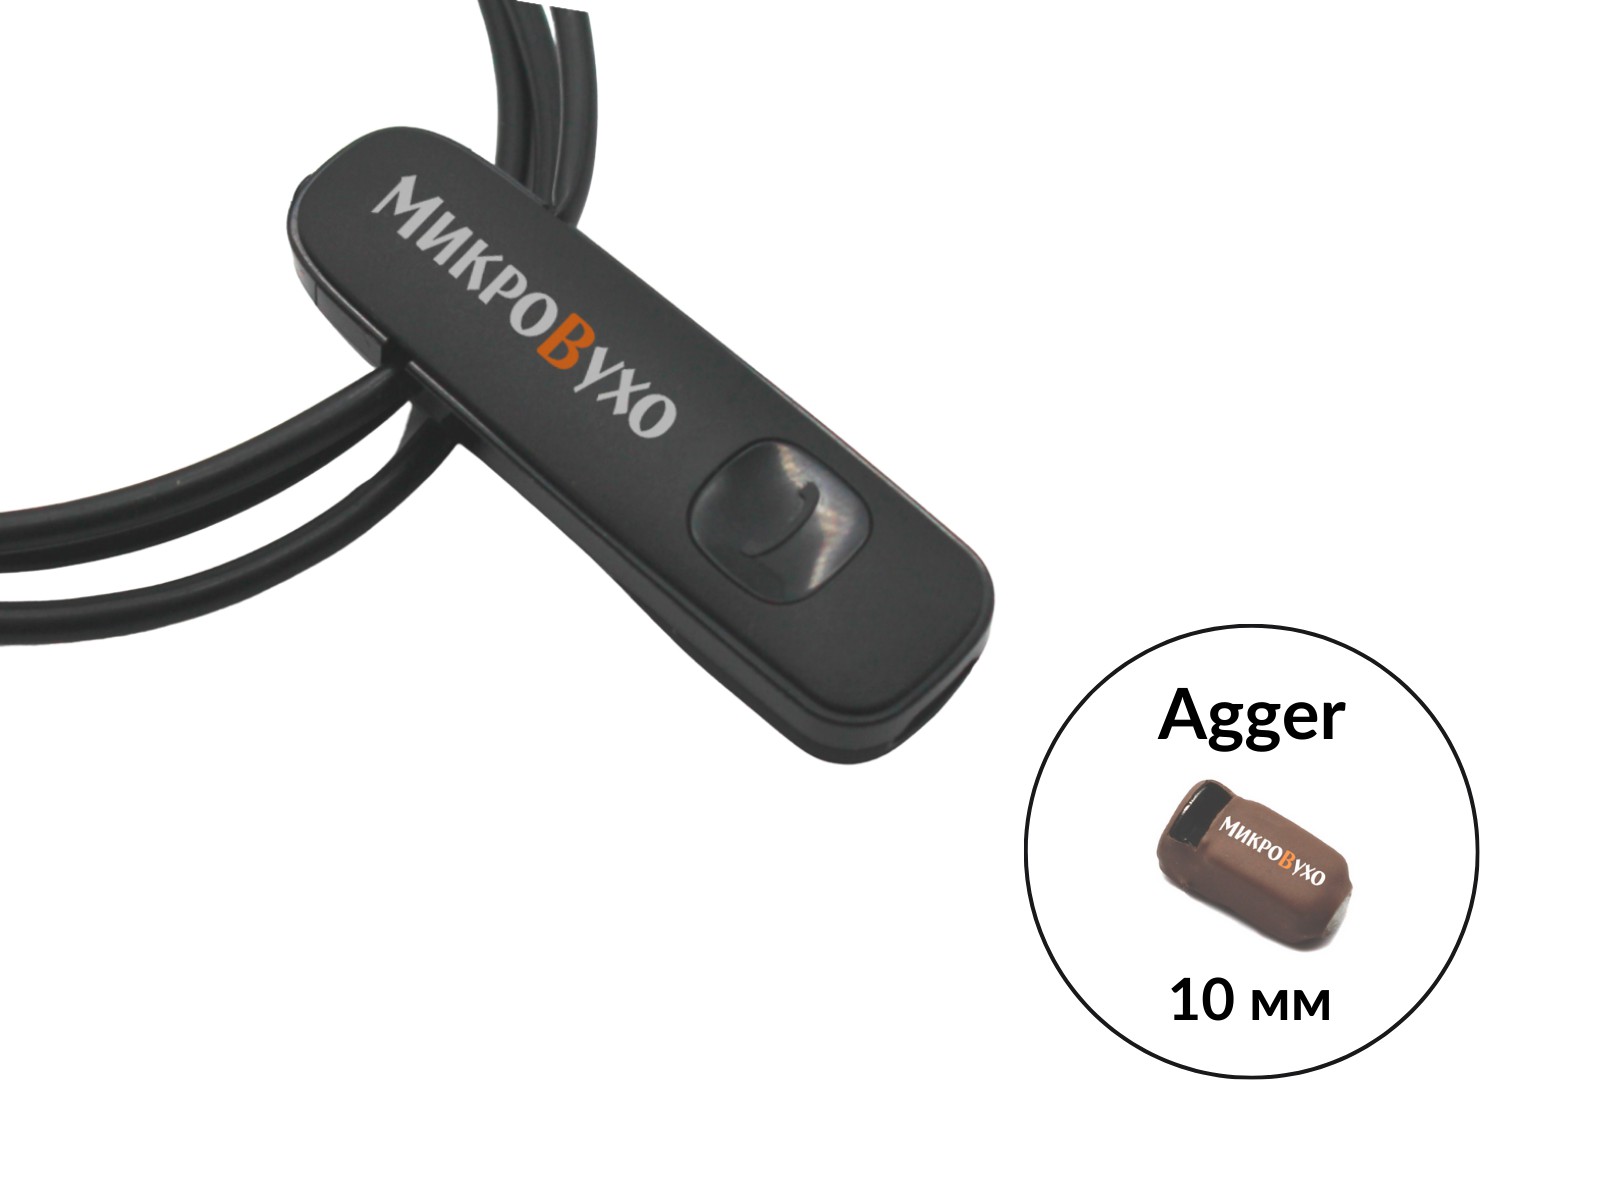 Гарнитура Bluetooth Plantronics с капсульным микронаушником Agger 10 мм - изображение